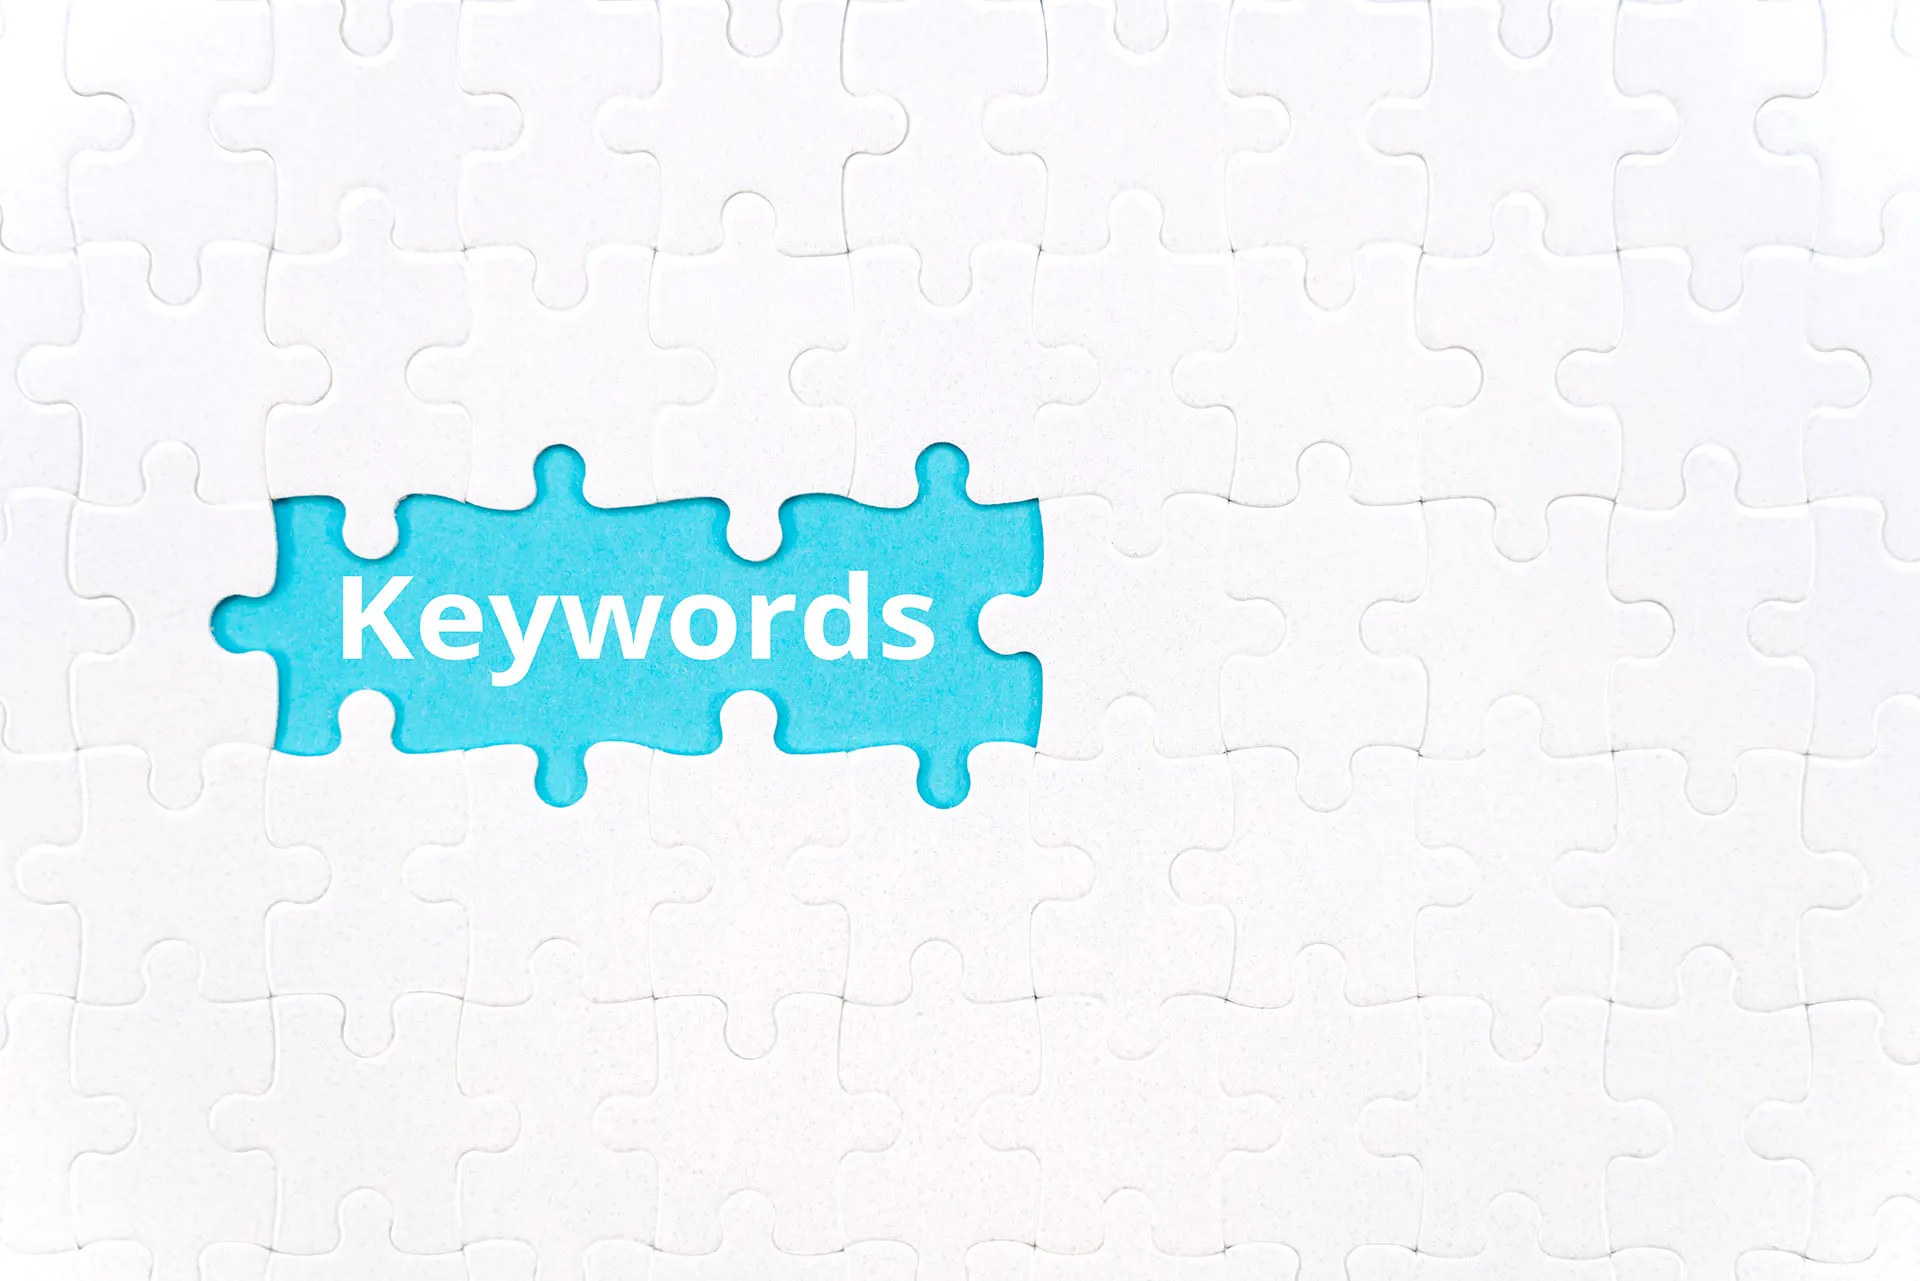 Anahtar kelime araştırma, mavi yapboz parçasında 'Keywords' yazısıyla vurgulanmıştır.